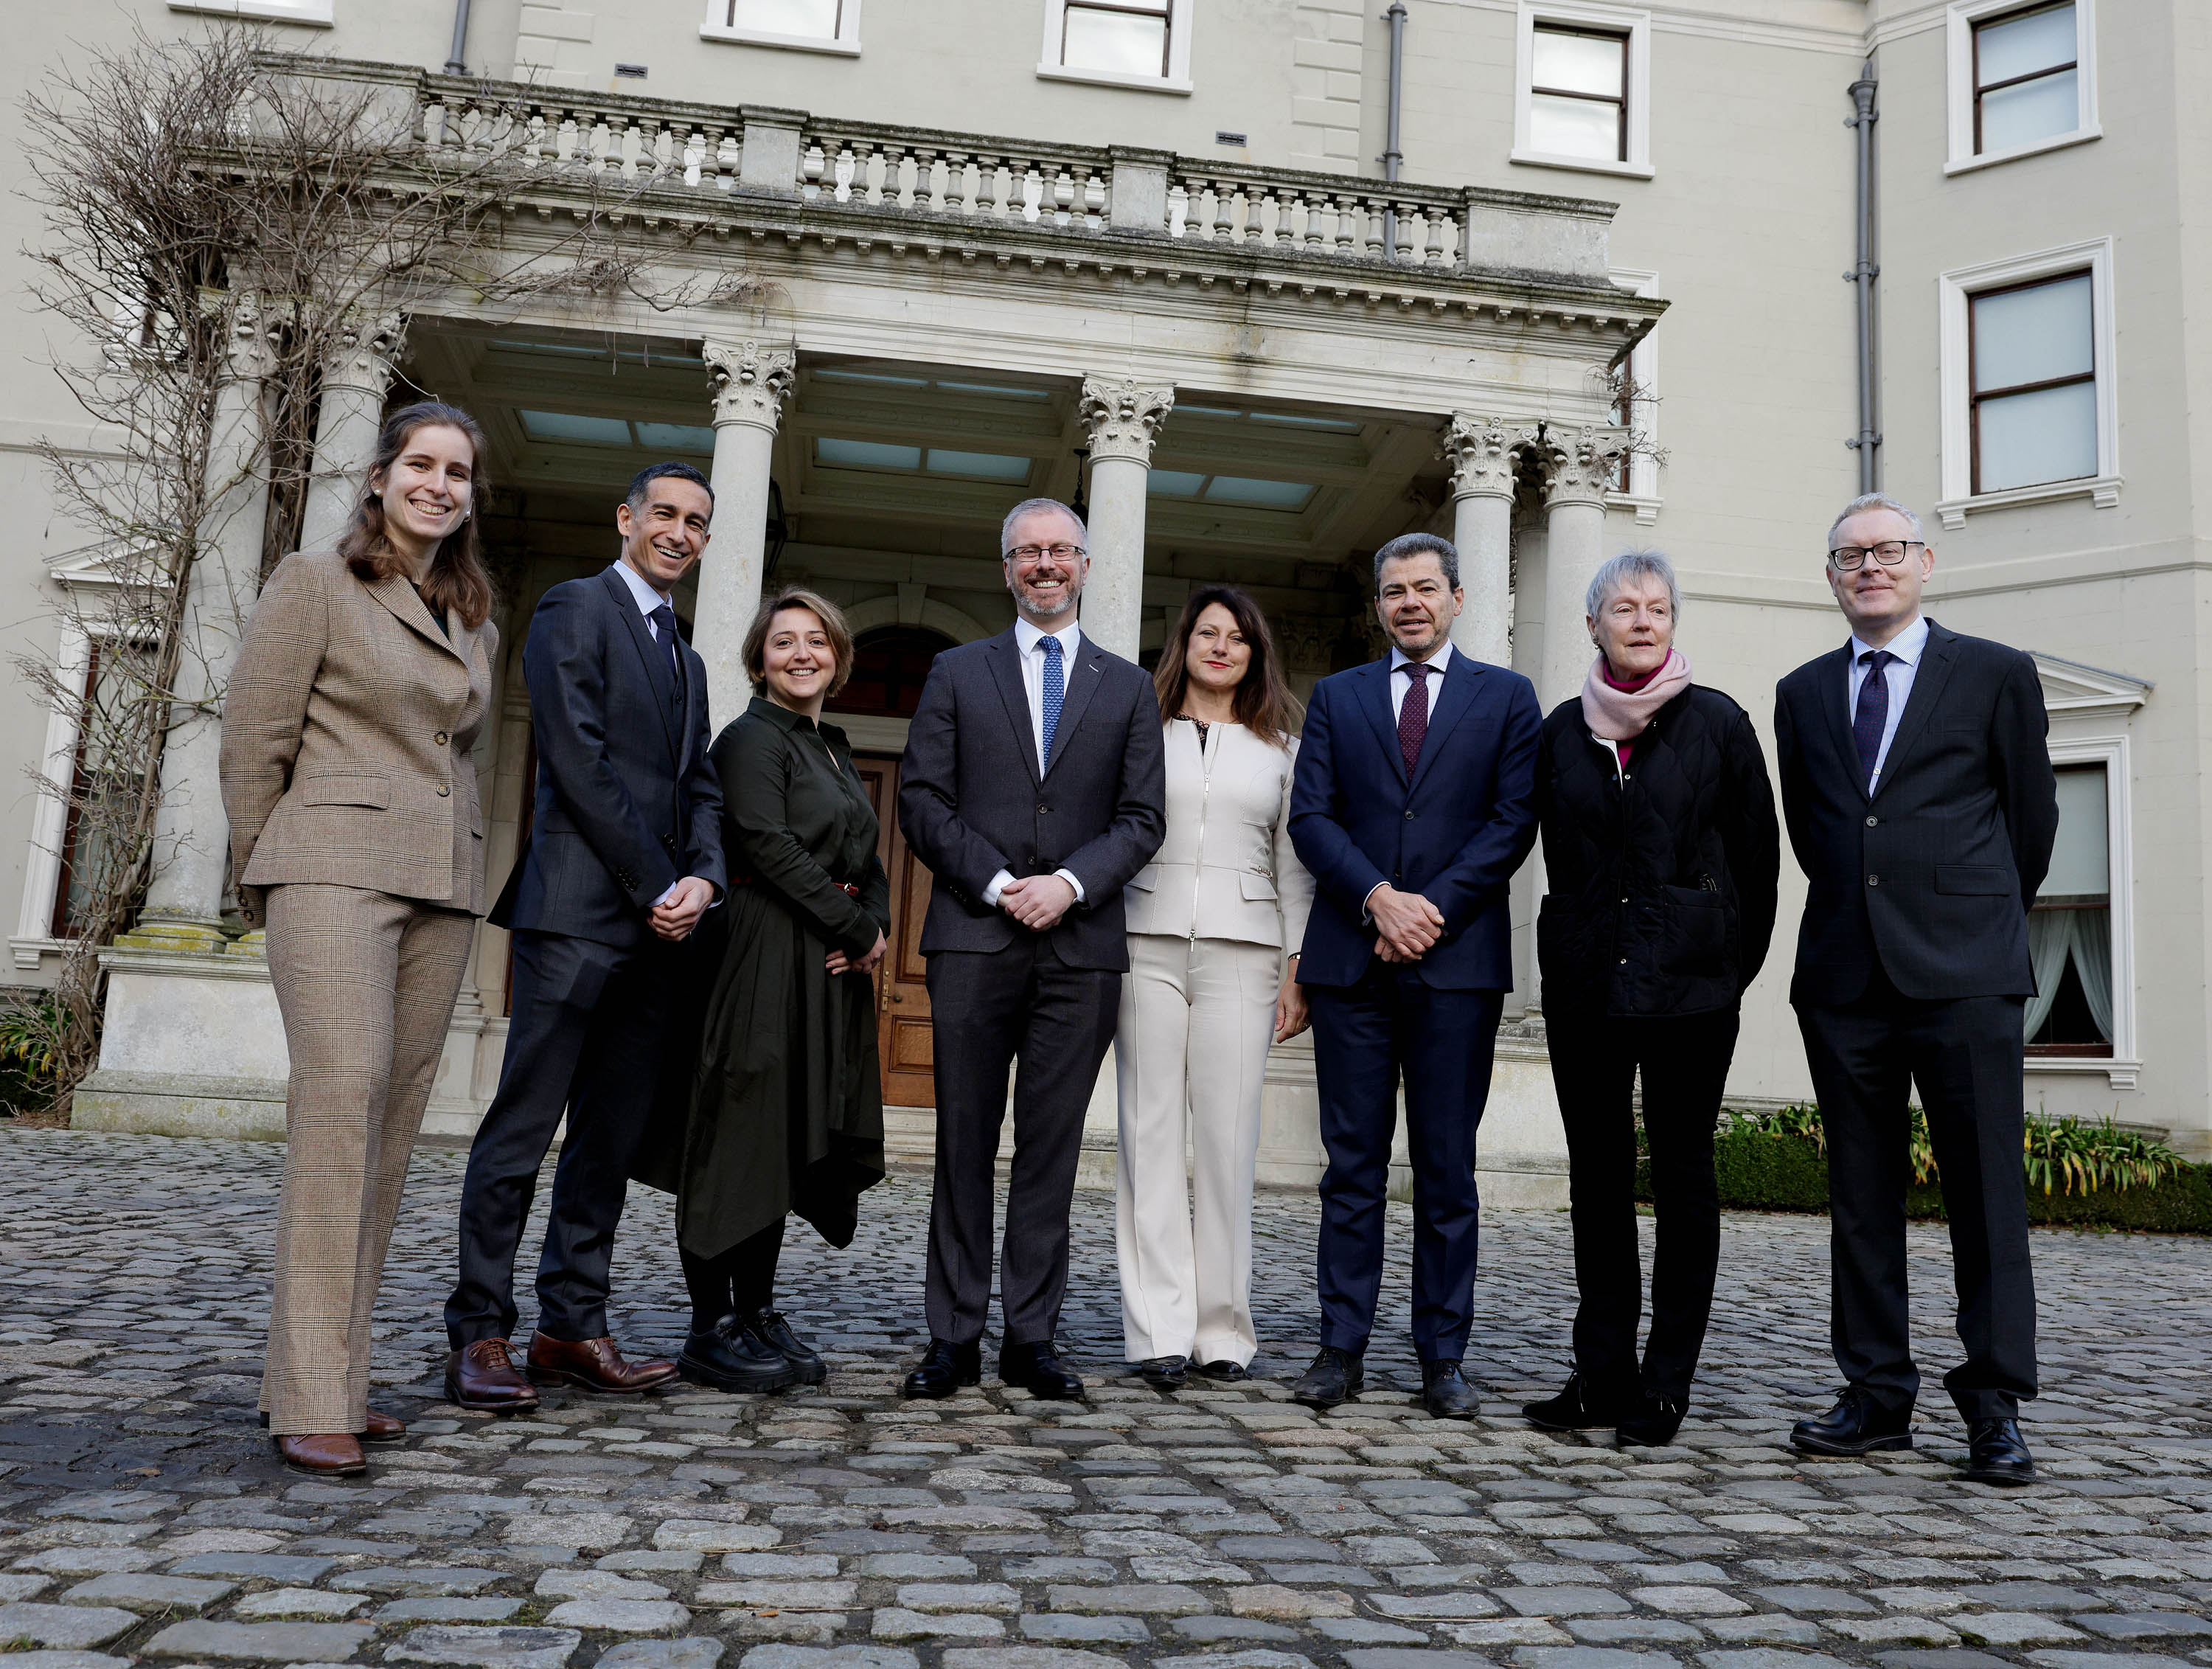 Le projet conjoint Conseil de l'Europe - Union européenne Barnahus Irlande démarre à Dublin